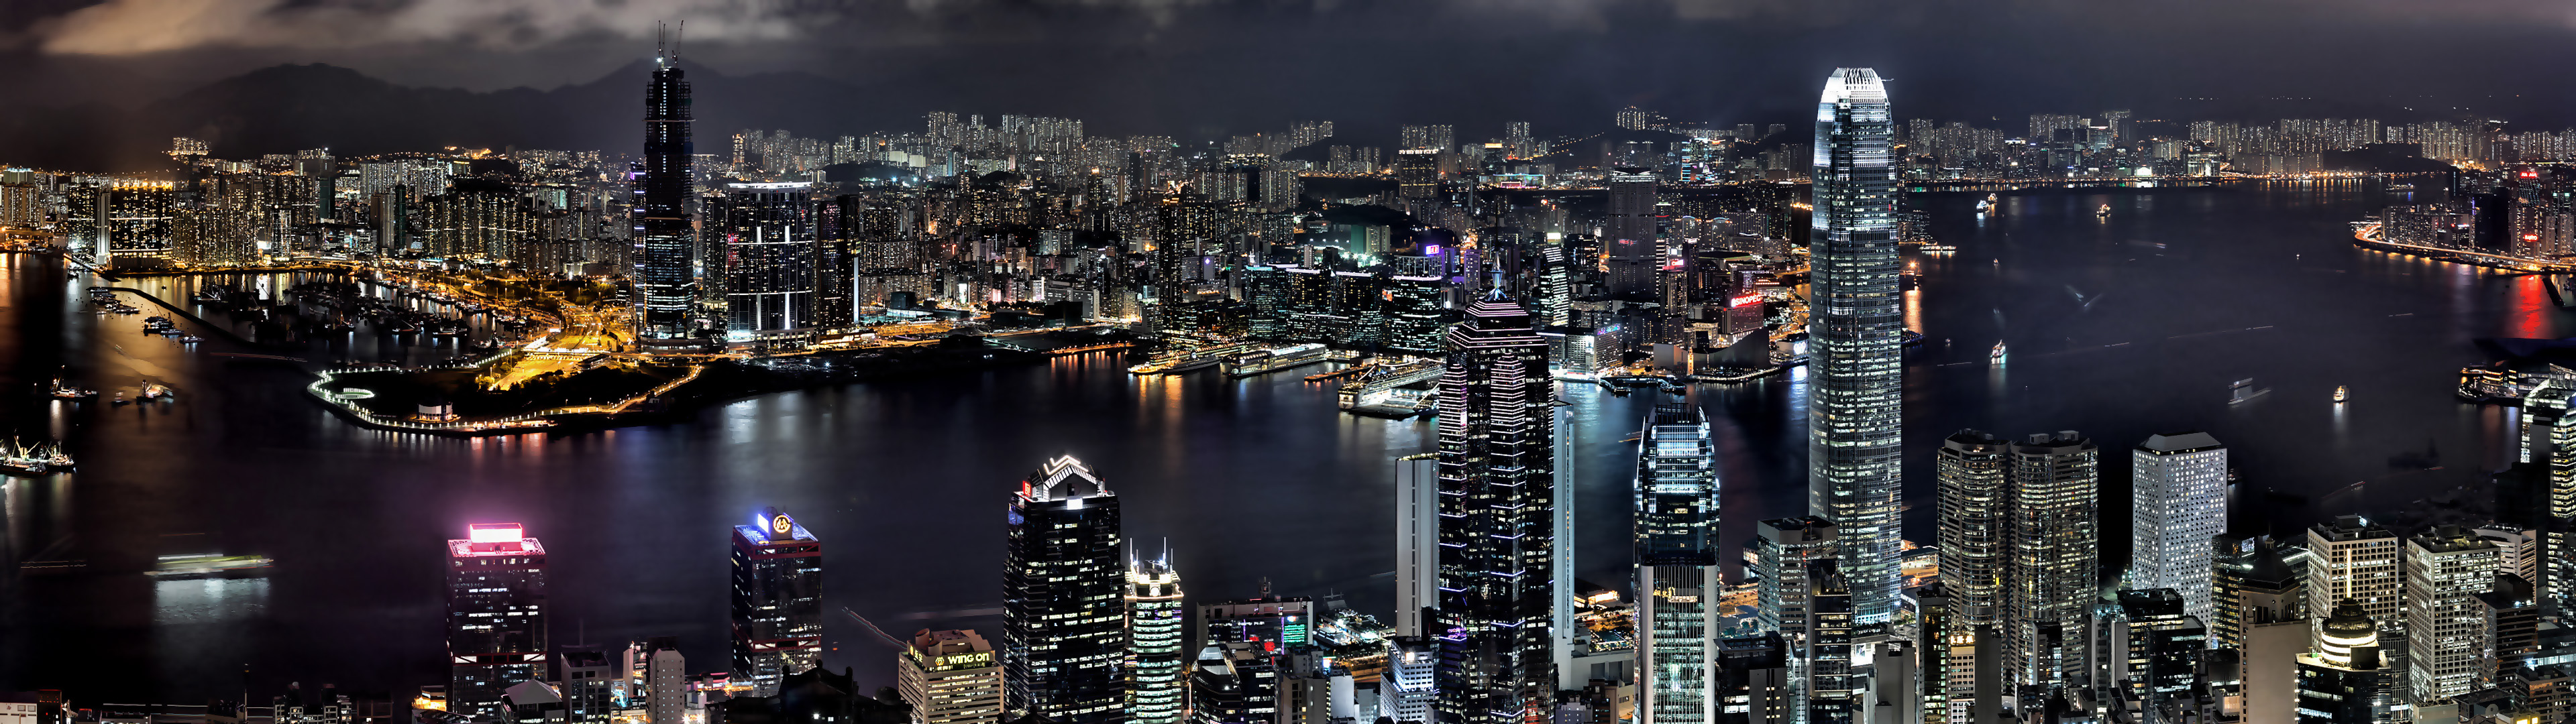 2 экран города. Гонконг небоскребы. Панорама ночного города. Обои на два монитора. Панорама на два монитора.